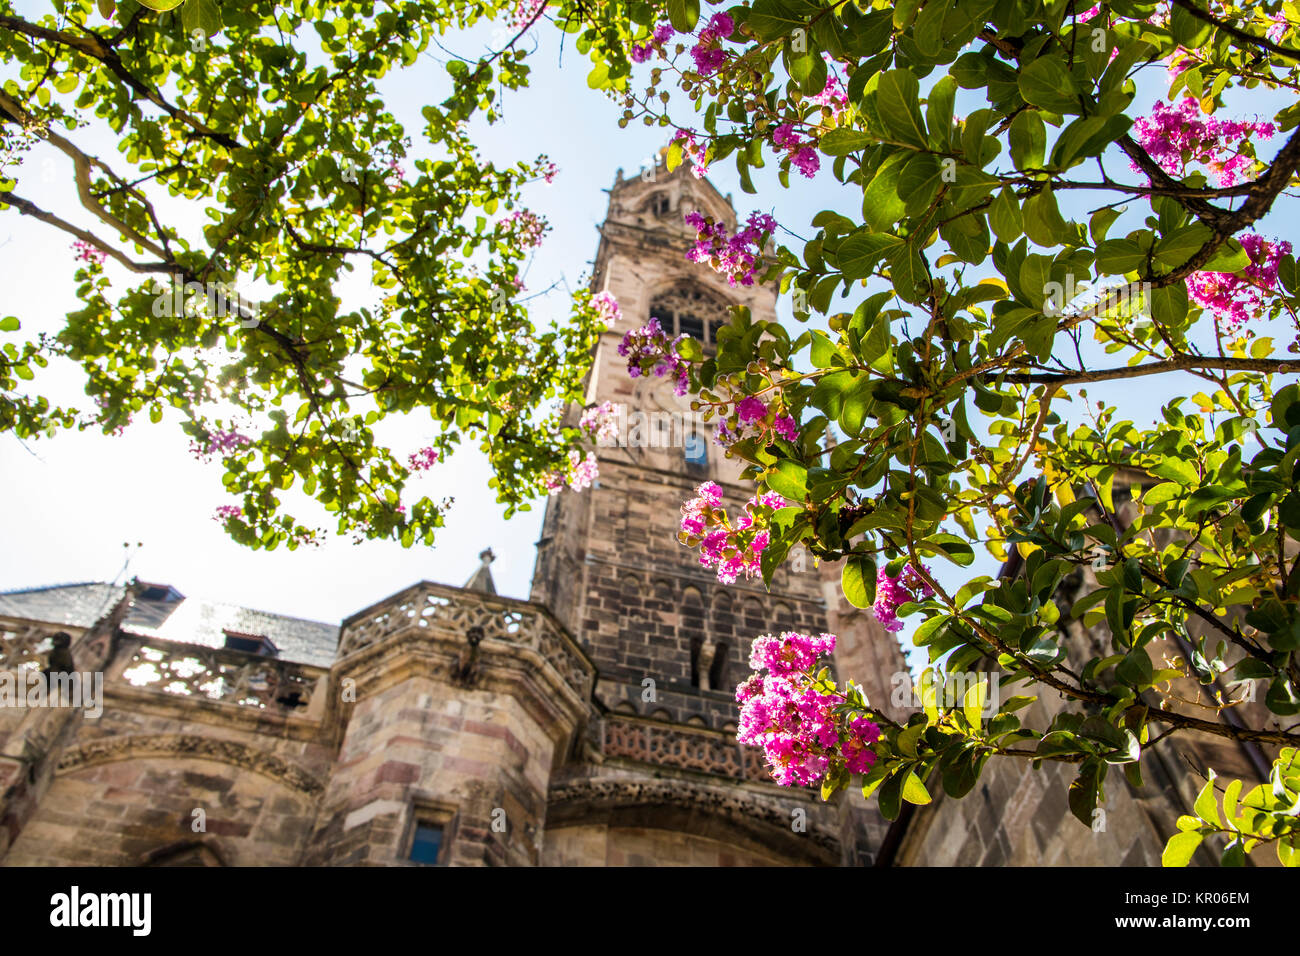 Le clocher de la cathédrale de Bolzano vu à travers un arbre avec des fleurs roses et fucsia Banque D'Images